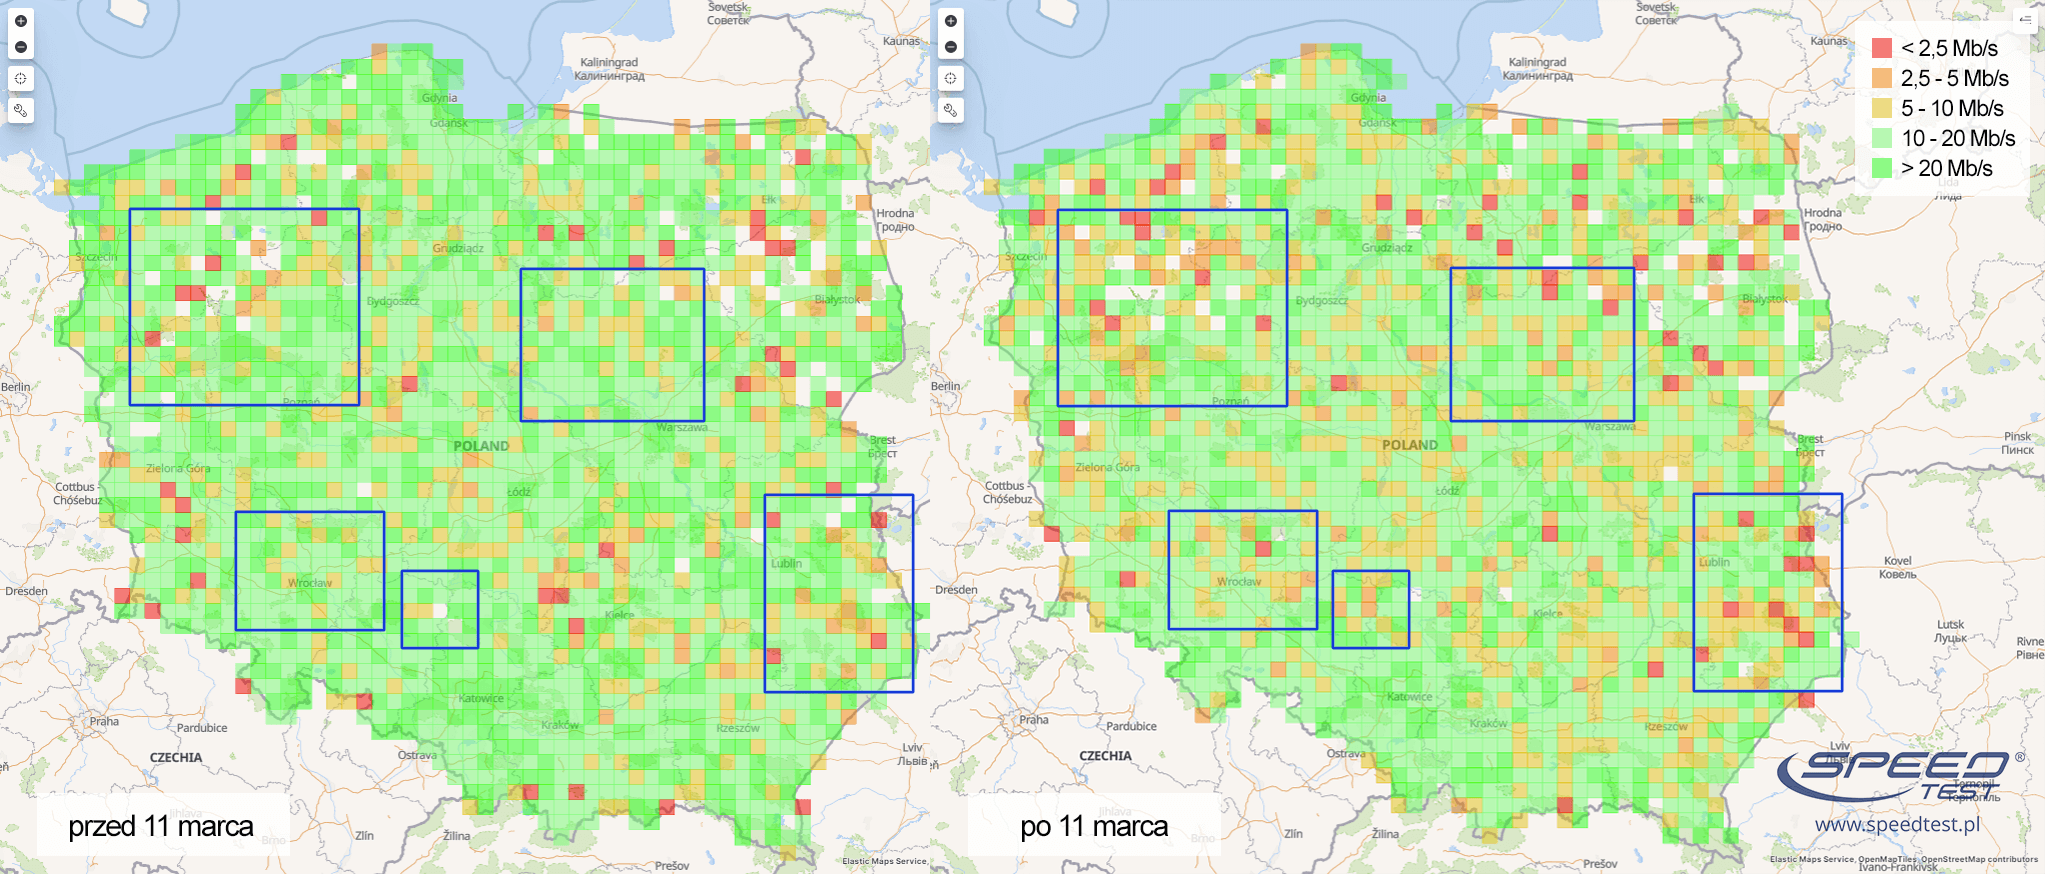 SpeedTest.pl map March 2020